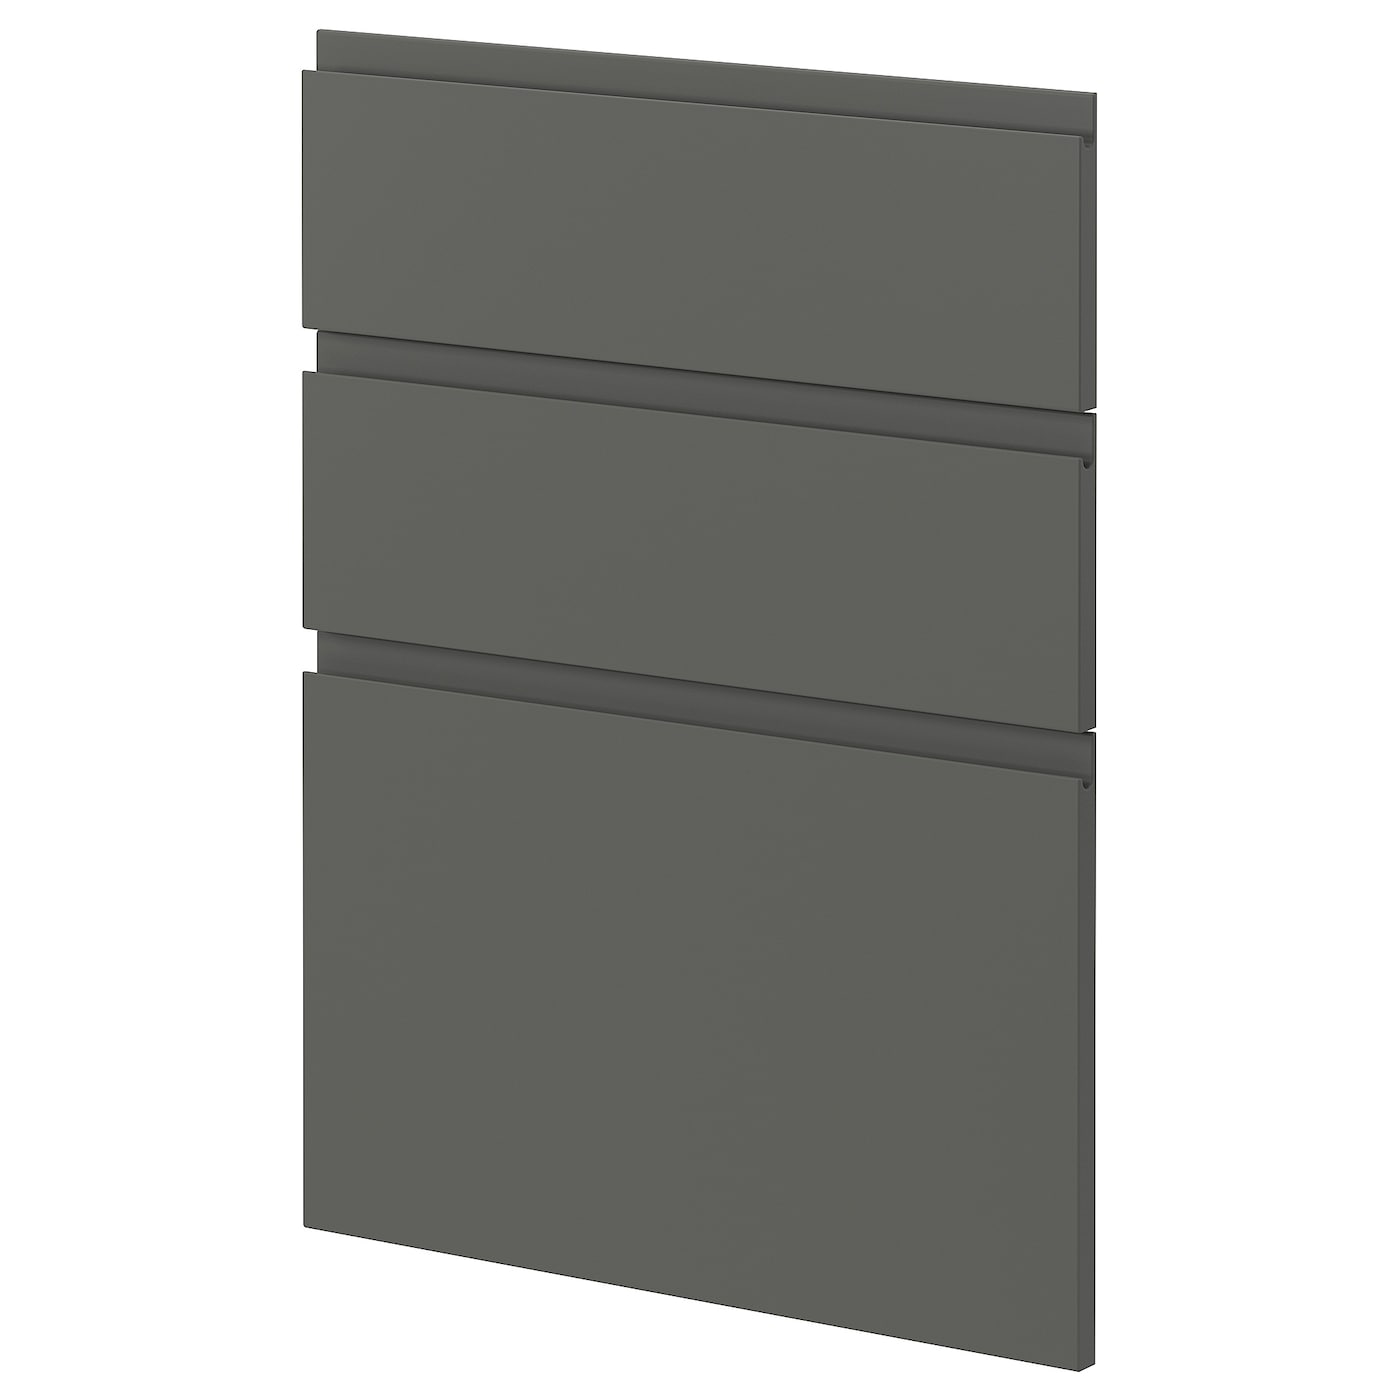 Накладная панель для посудомоечной машины - IKEA METOD, 80х60 см, темно-серый, МЕТОД ИКЕА